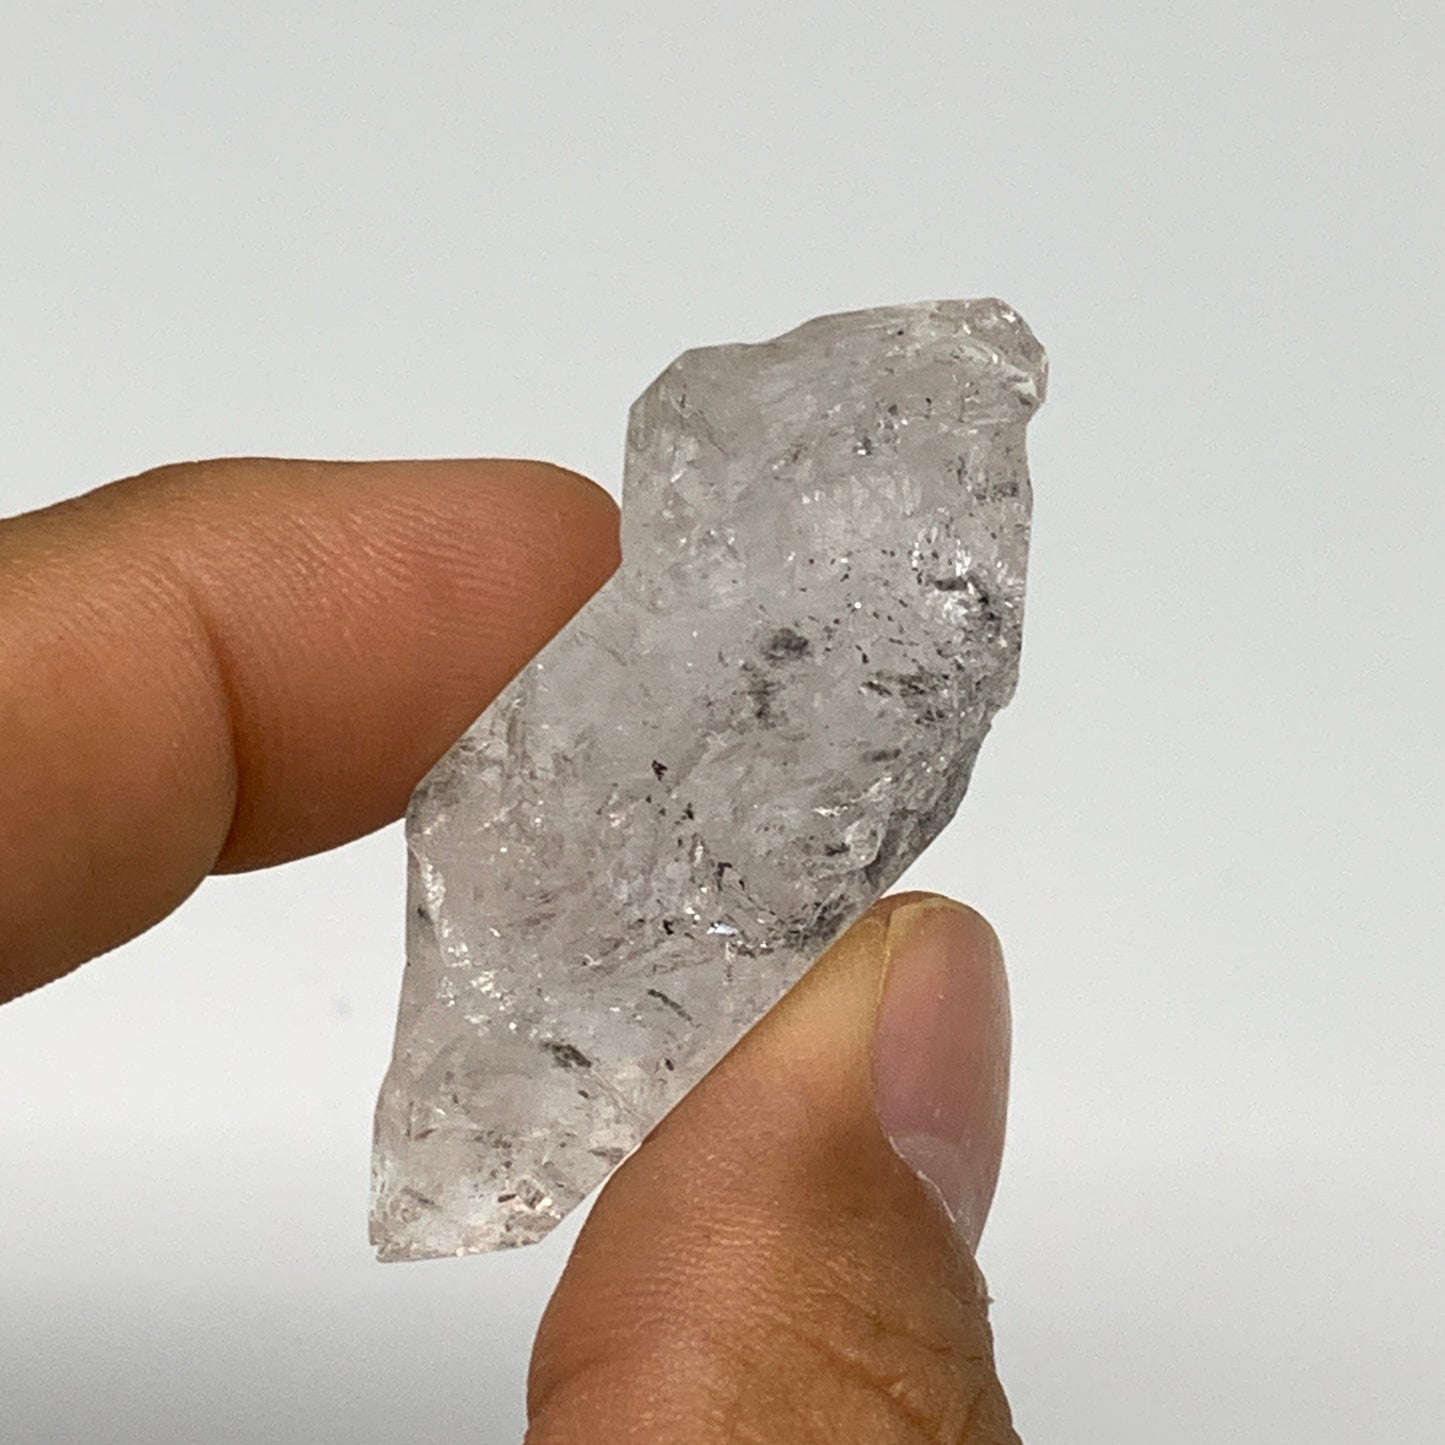 20g, 1.8"x1"x0.7", Natural Window Quartz Crystal Terminated @Pakistan,B27516